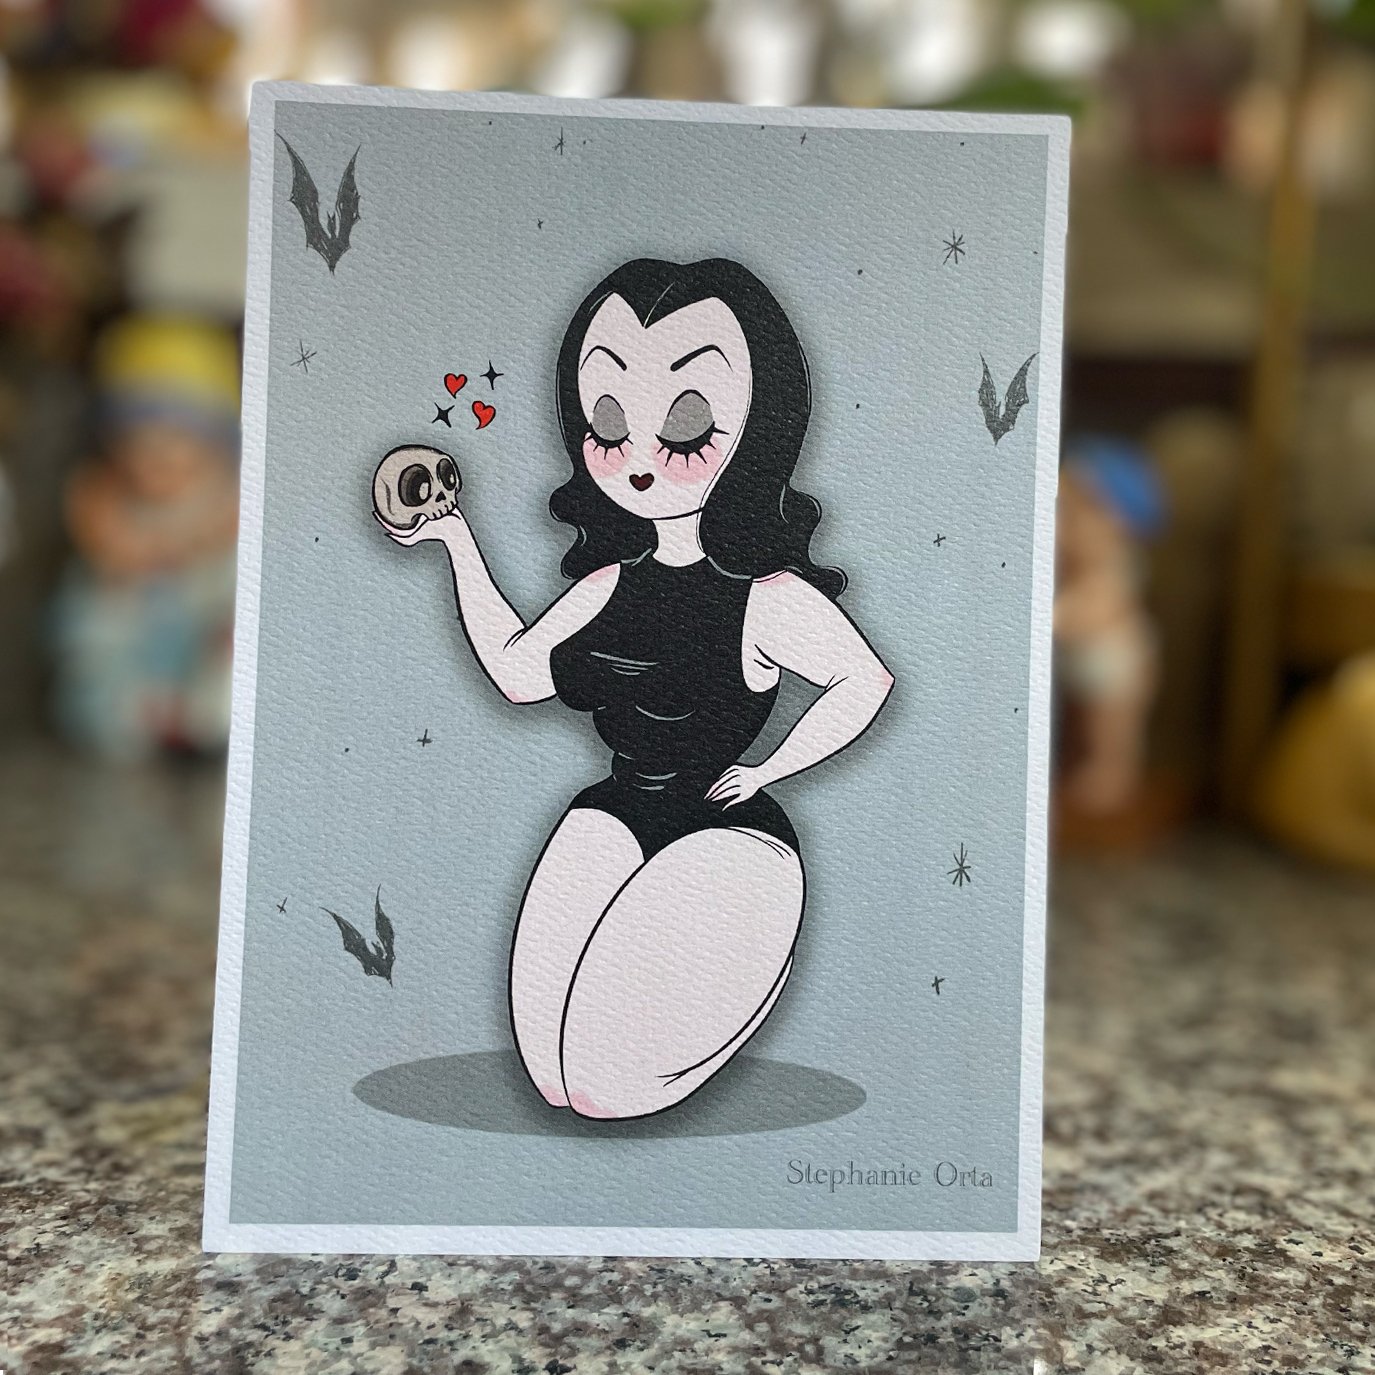 Cutie Ghoul Vamp 5" x 7" Inch Print 